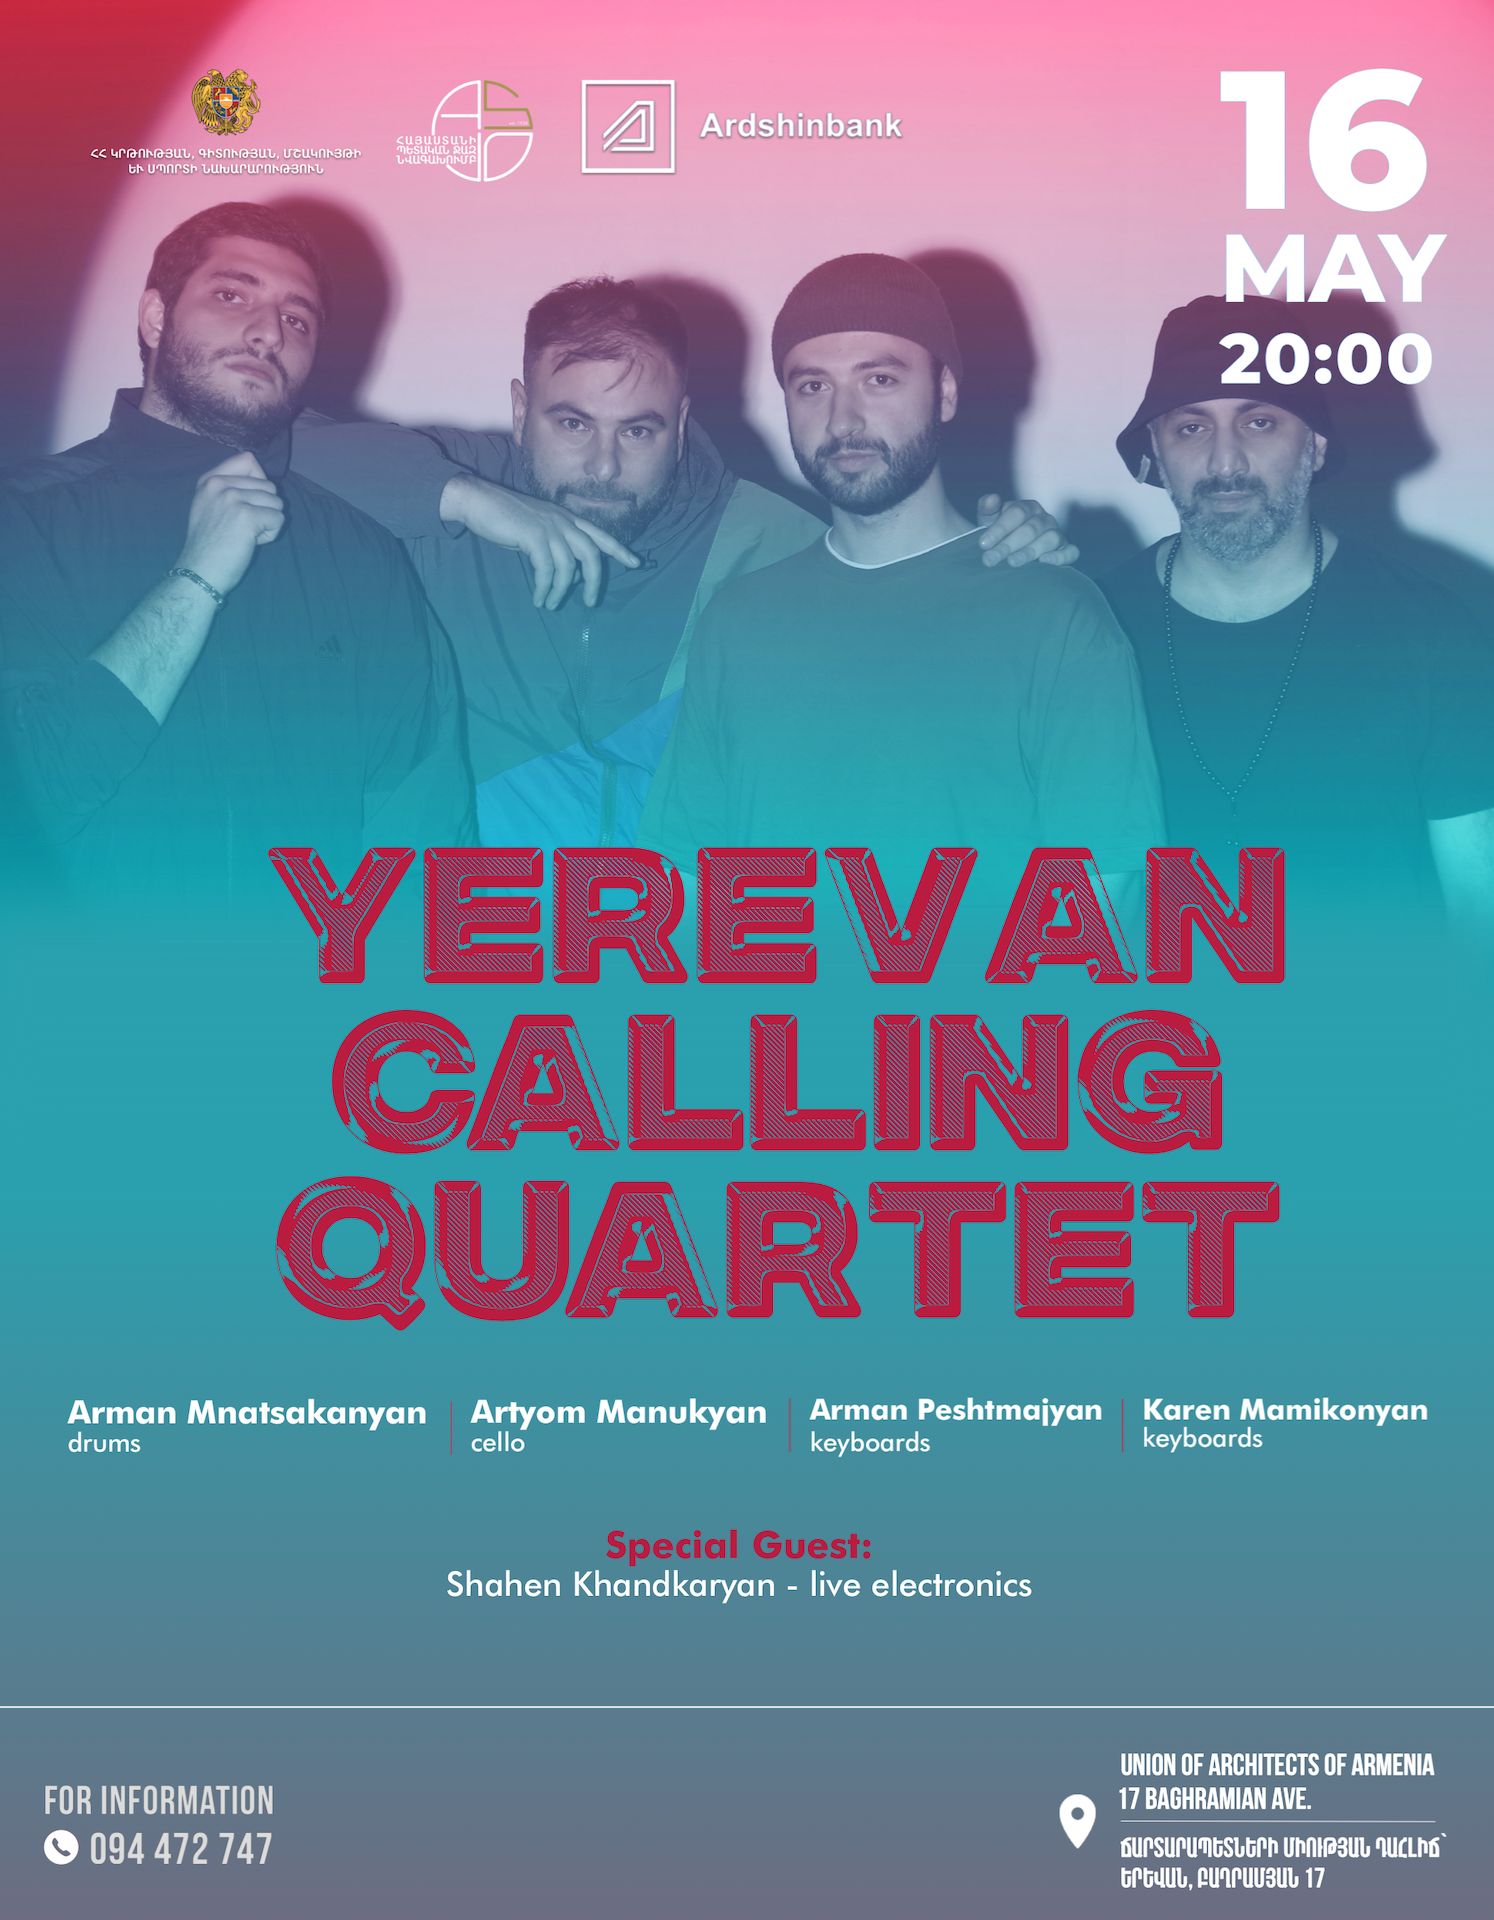 Yerevan Calling Quartet